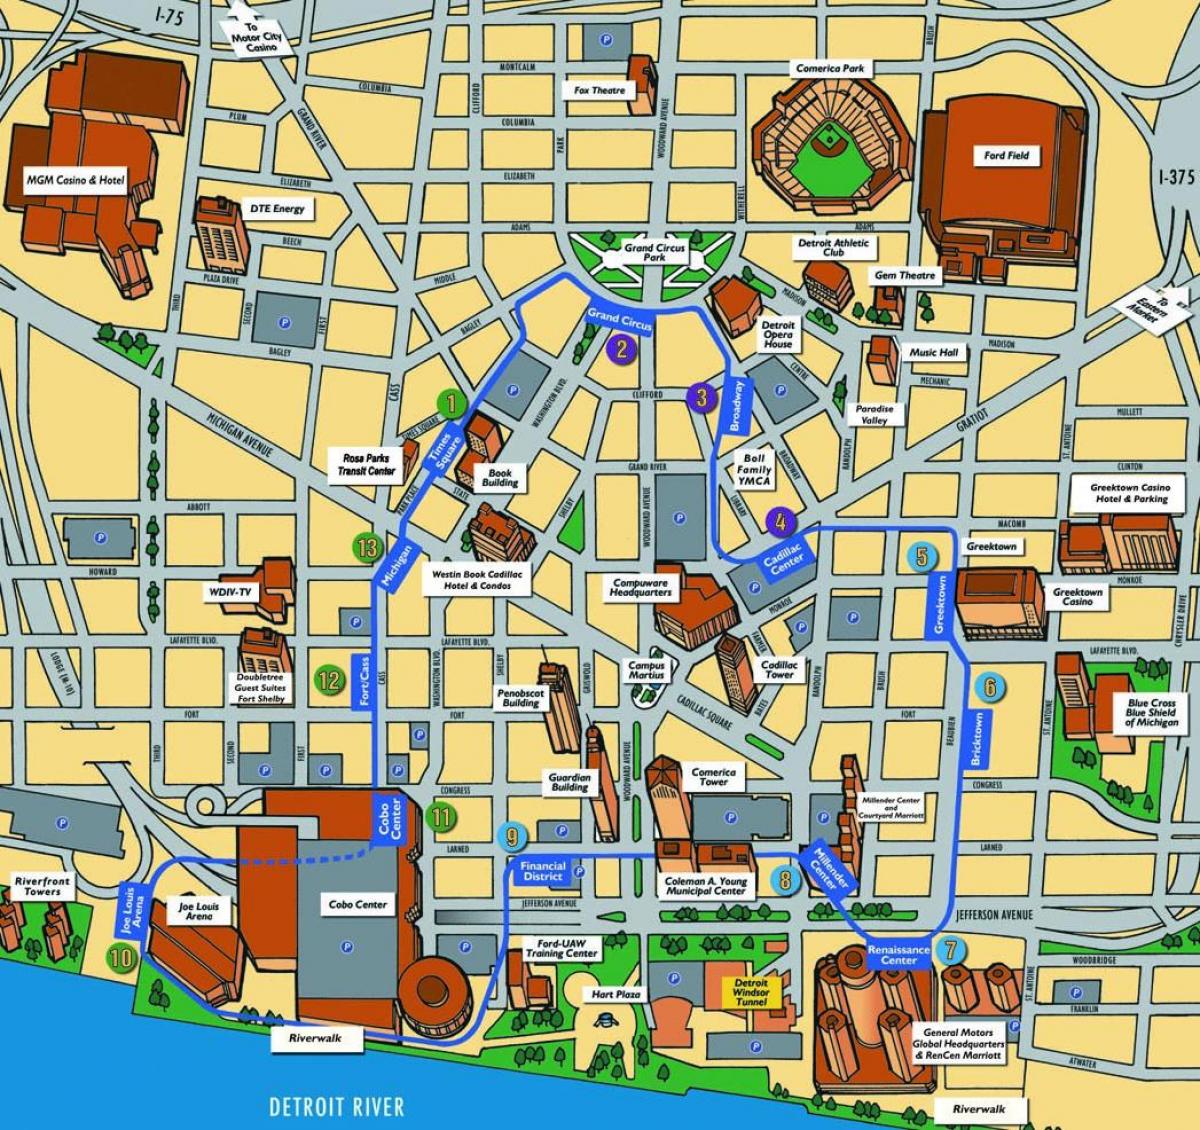 Detroit turistik haritası